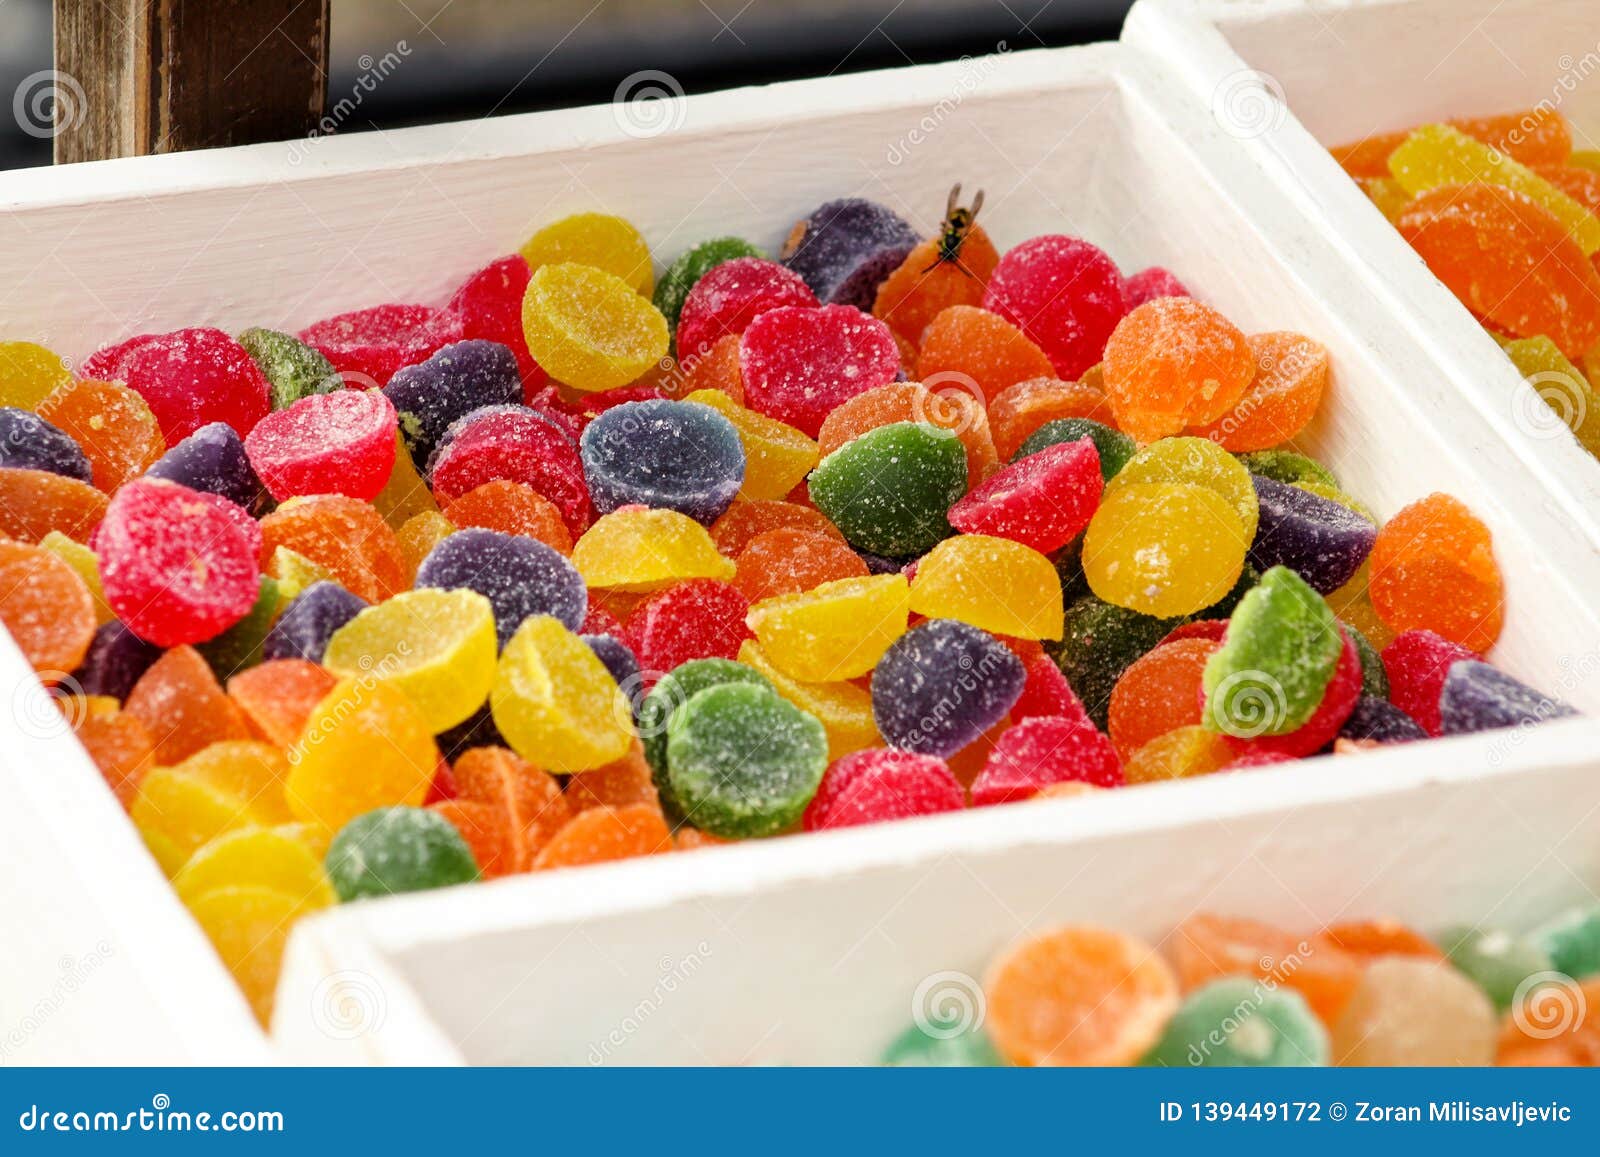 candies with gelatin